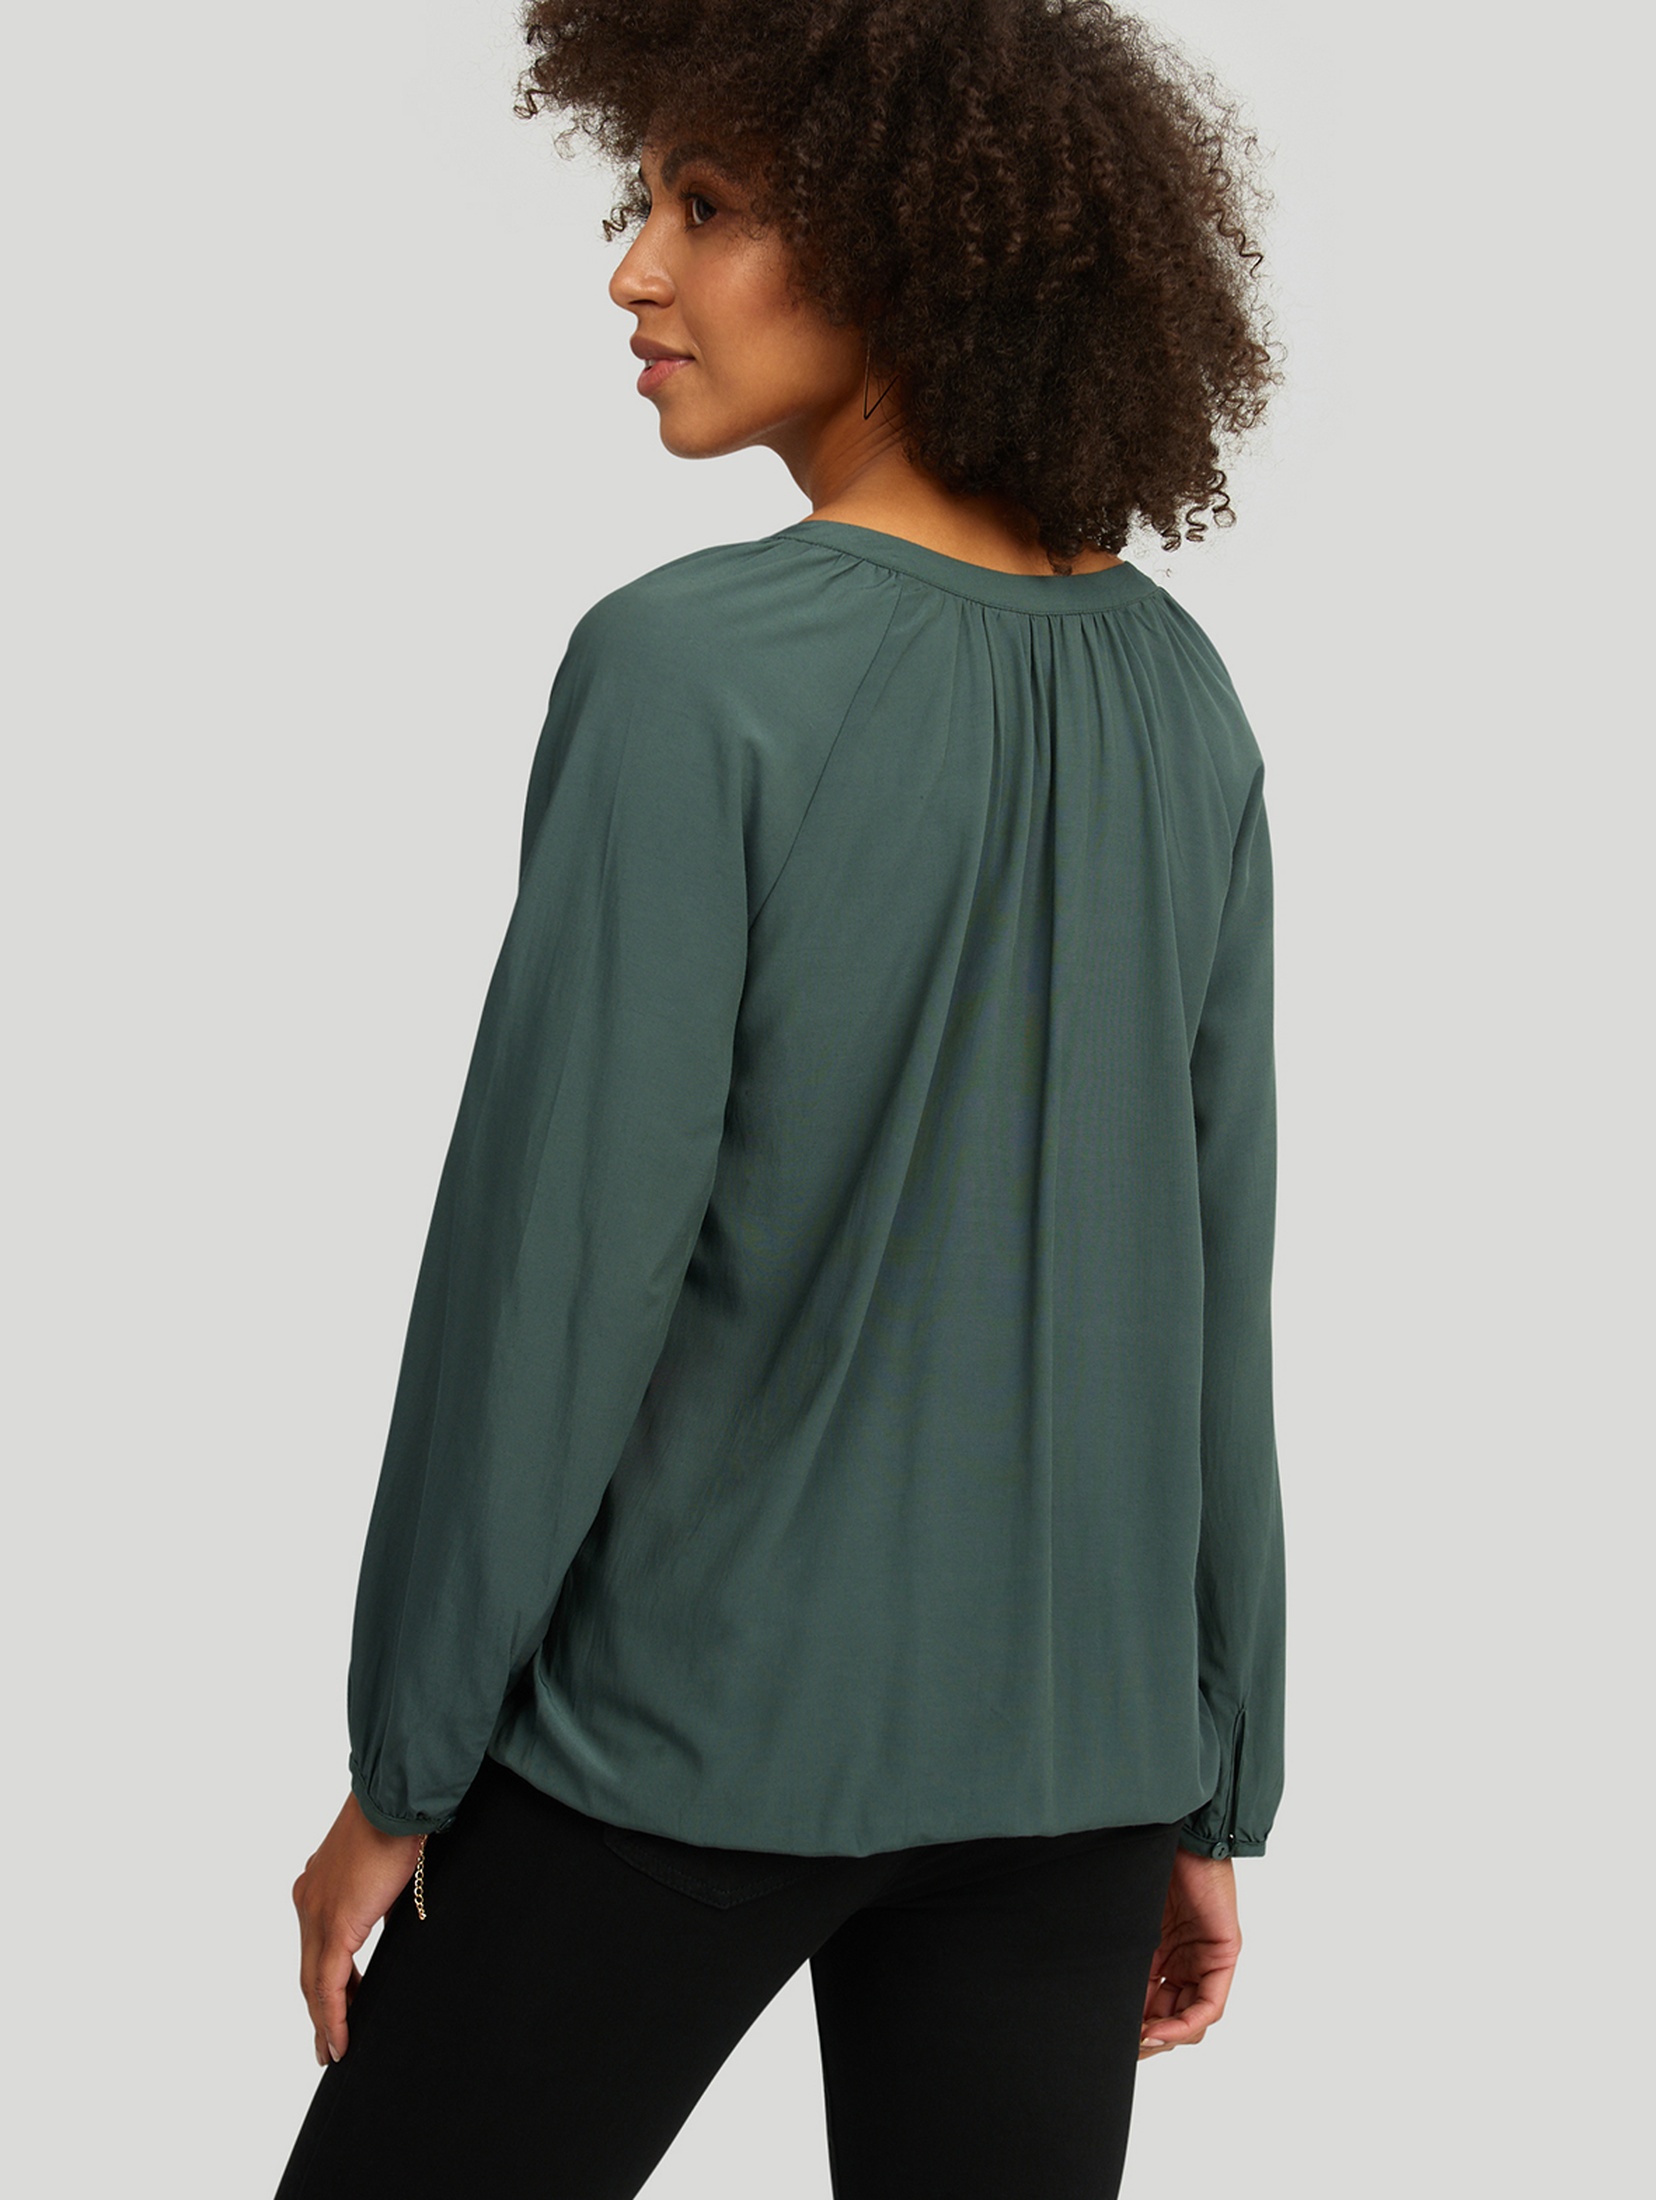 Luźna bluzka damska z długim rękawem - zielona